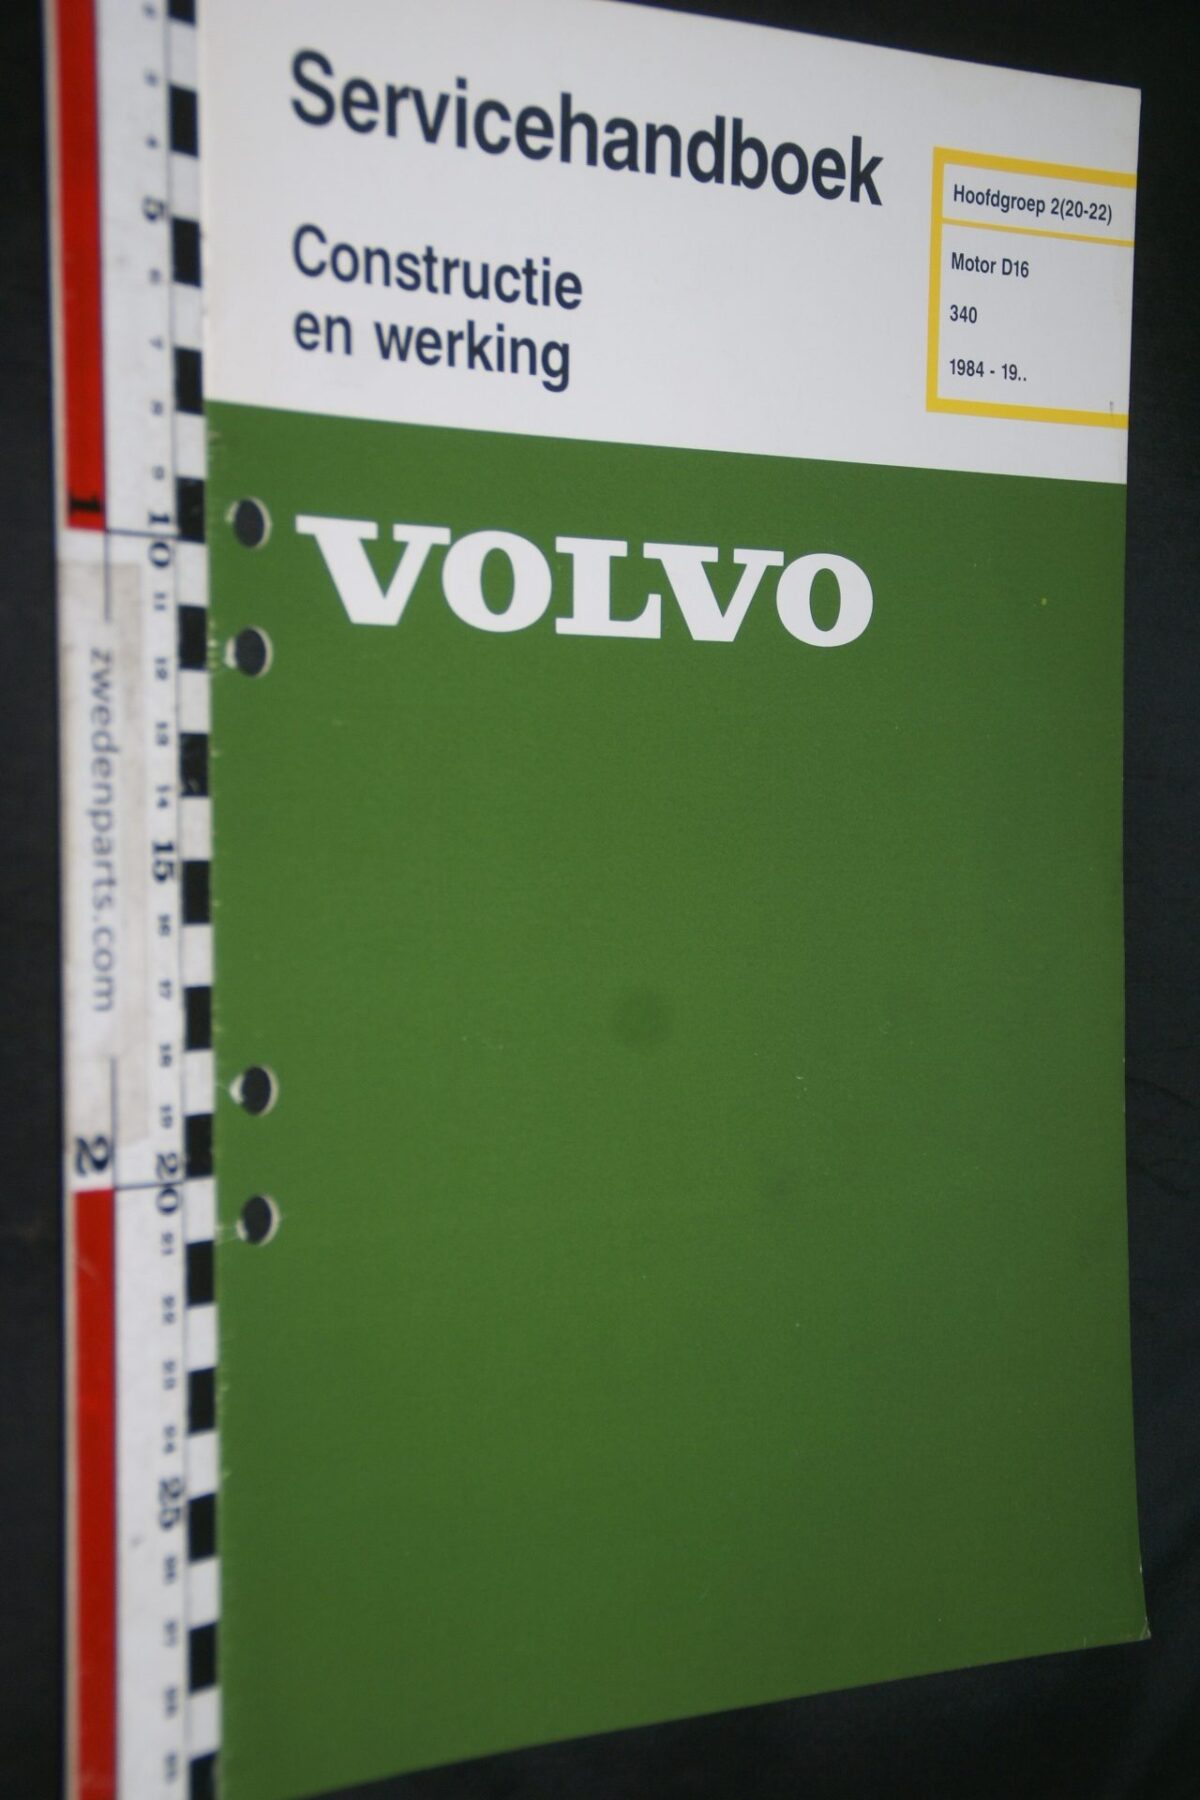 DSC07248 1985 origineel Volvo 340 servicehandboek  2(20-22) motor D16 1 van 900 TP 35224-1